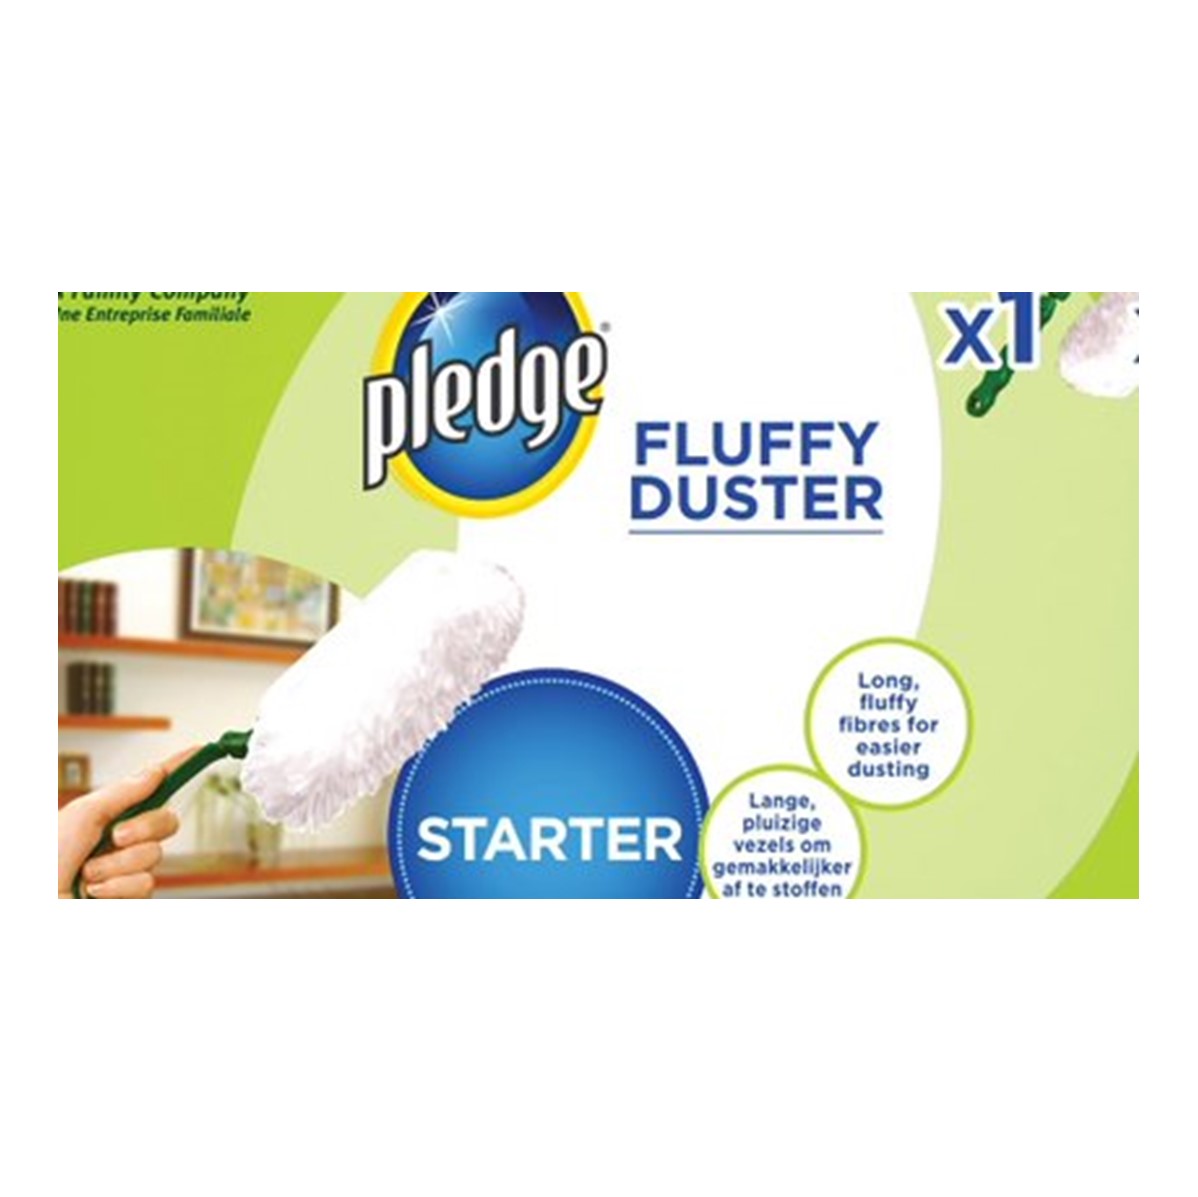 Pledge Fluffy Duster Starter Kit - 1 head & 2 dusters